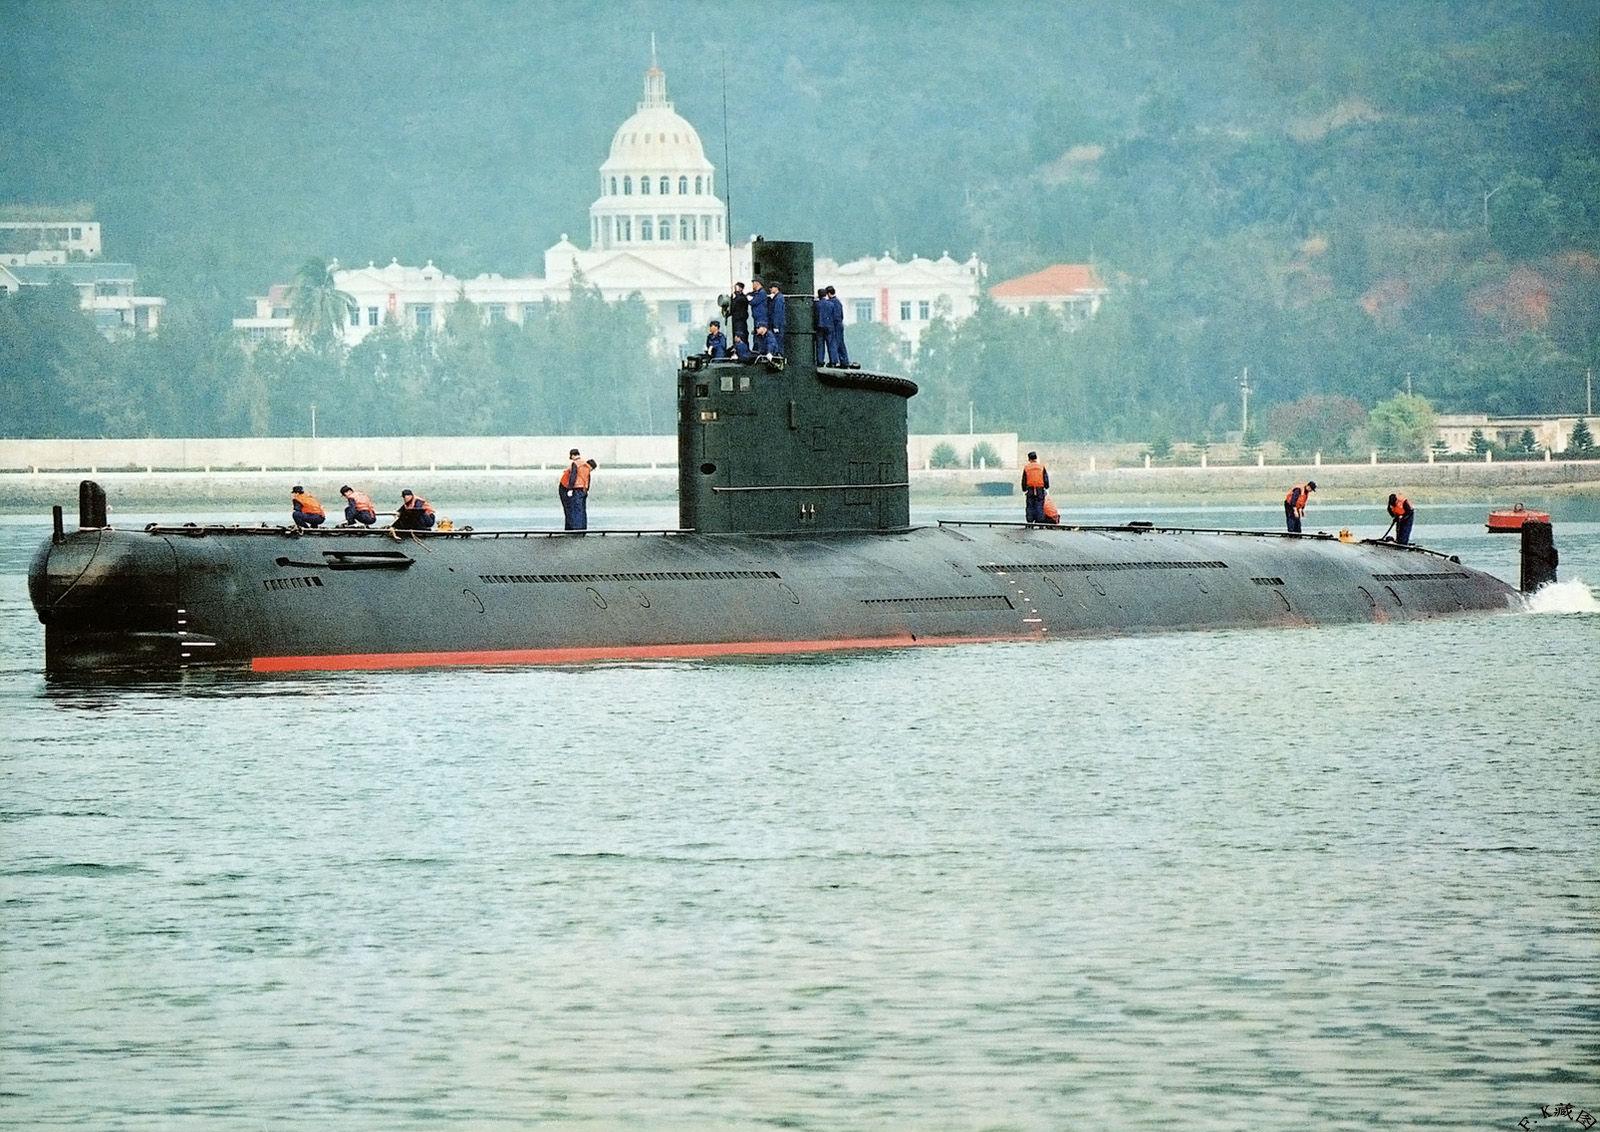 写实潜艇 二战德国潜艇u522 型号u522 模型-潜艇模型库-Maya(.ma/.mb)模型下载-cg模型网